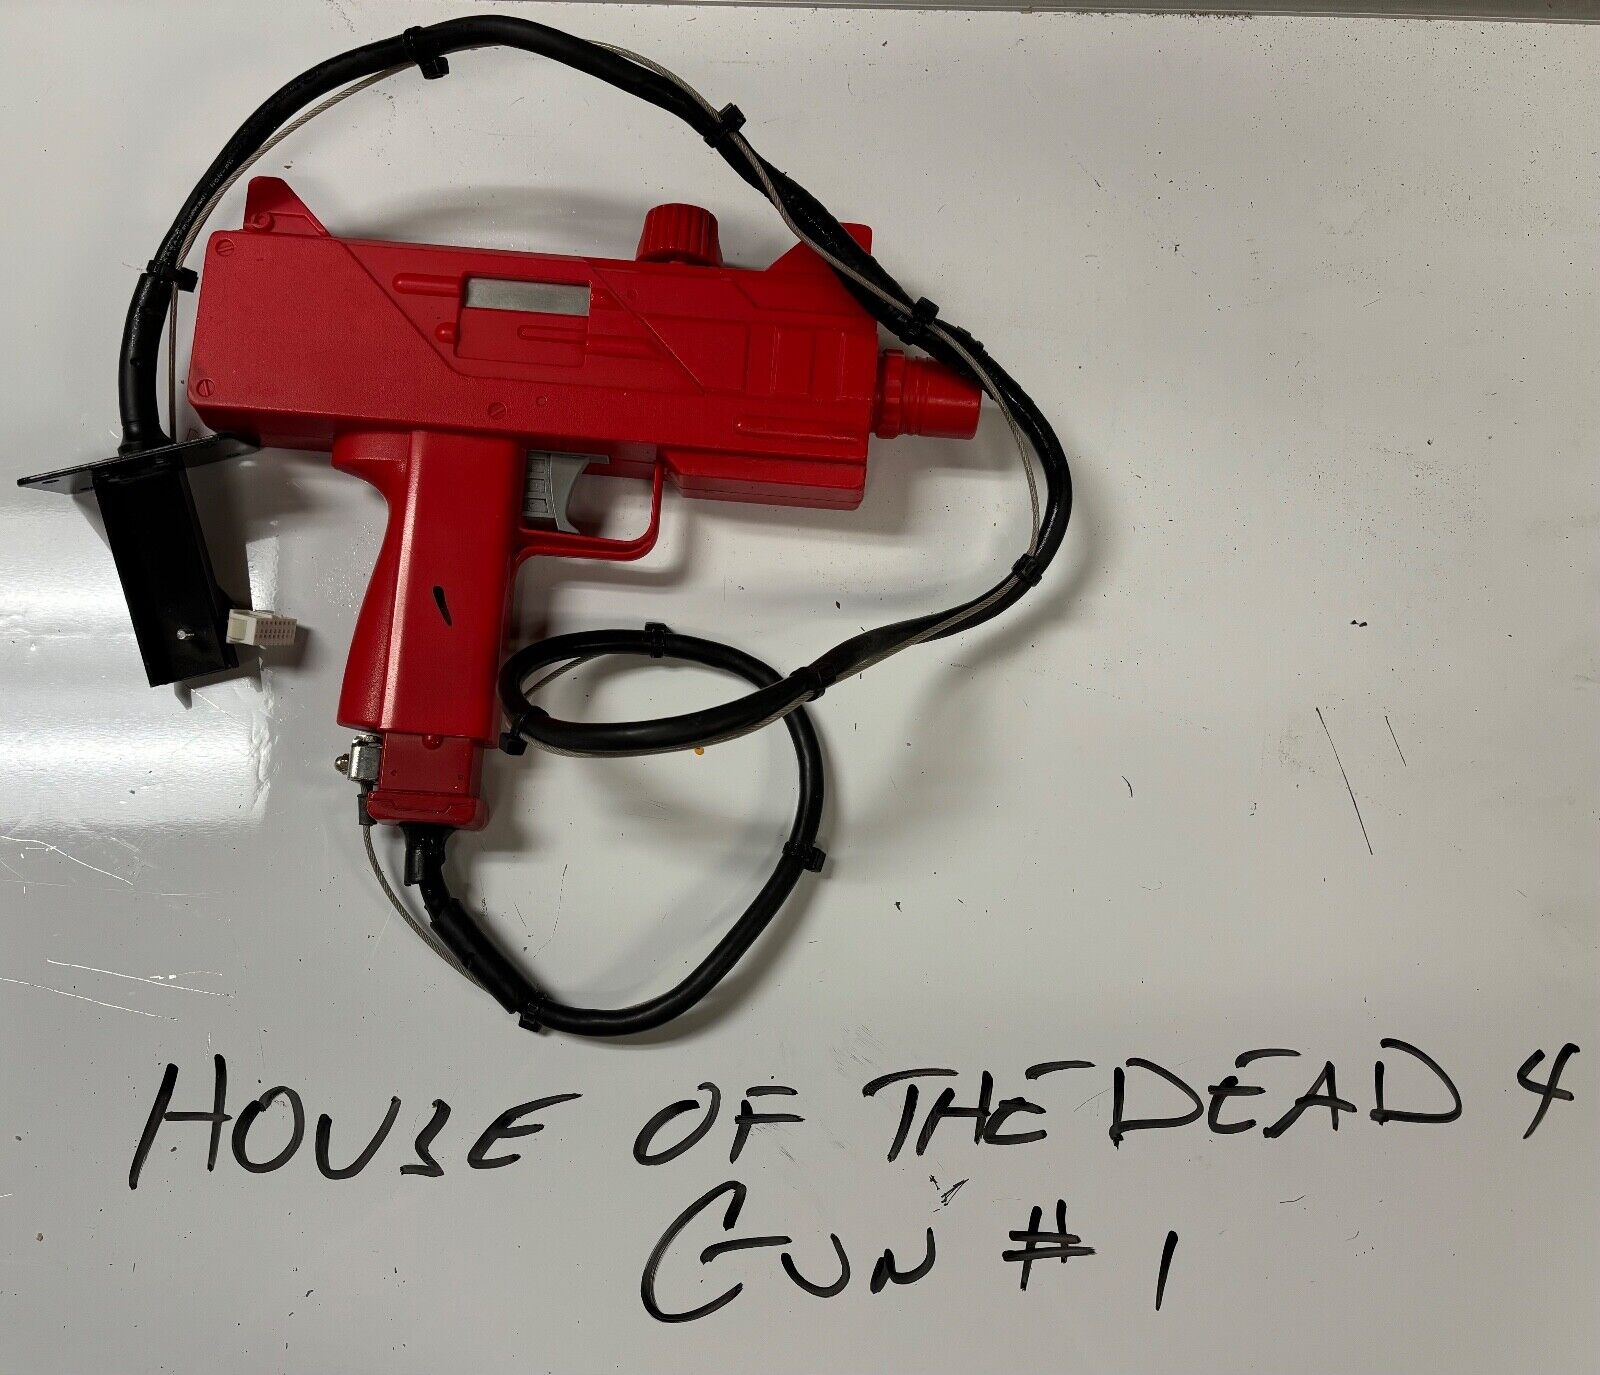 Sega The house of the dead 4 gun #1